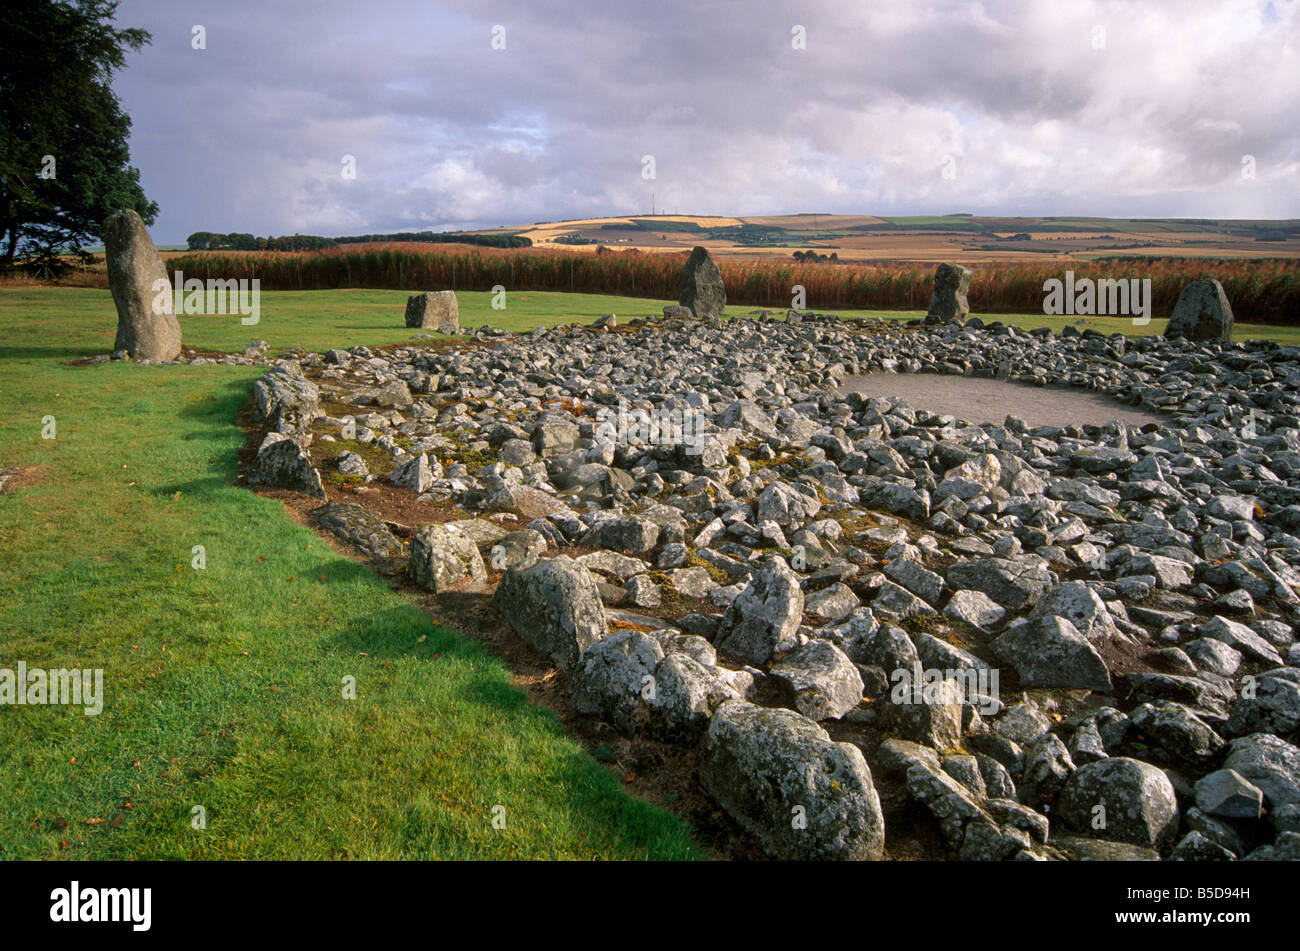 Loanhead de Daviot stone circle datant entre 2500 et 2000 BC, Daviot, Aberdeenshire, Ecosse, Europe Banque D'Images